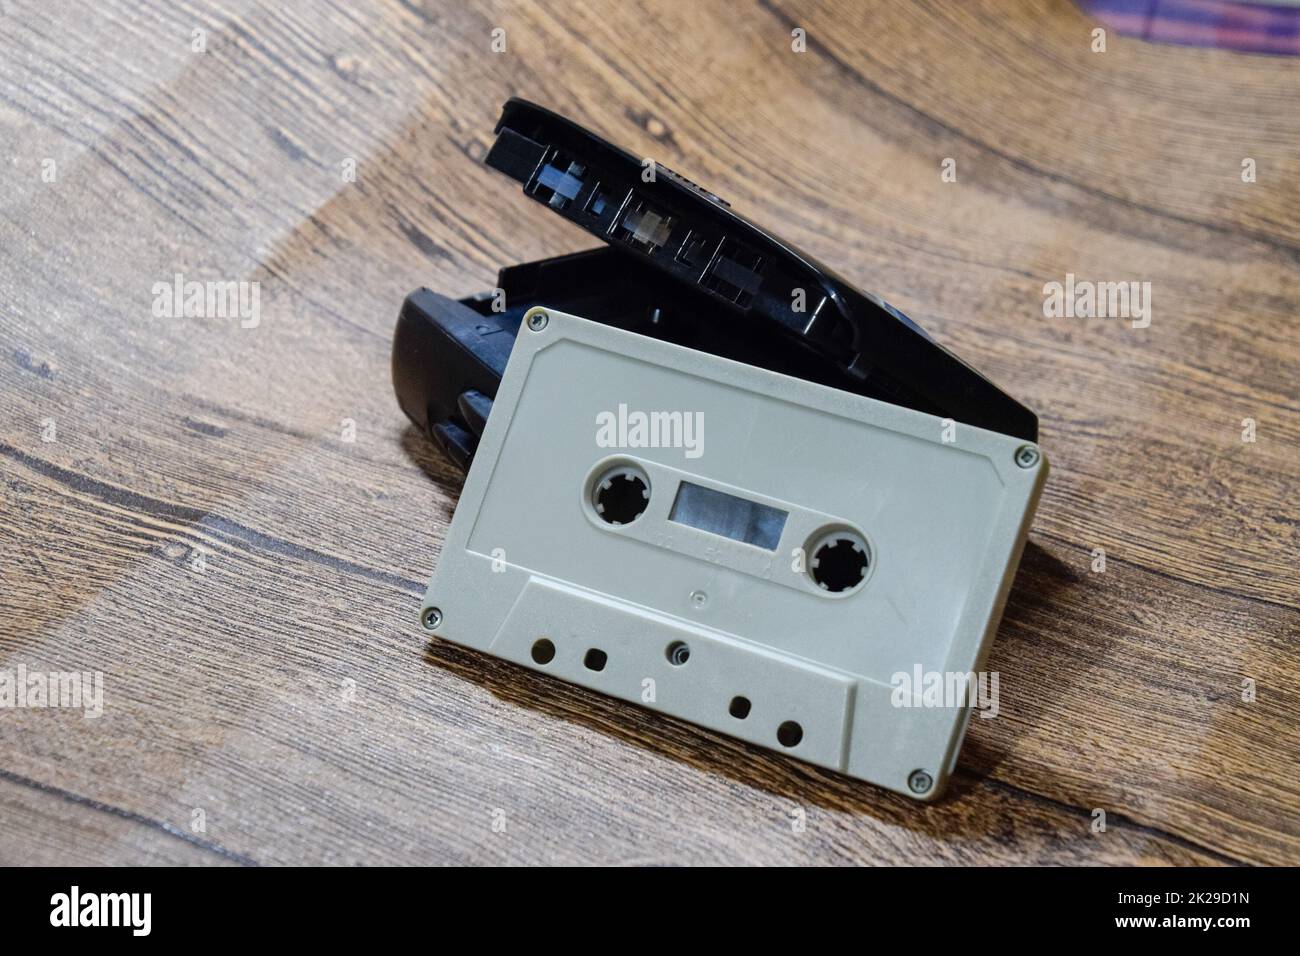 Califone Enregistreur/lecteur cassette (cas1500)